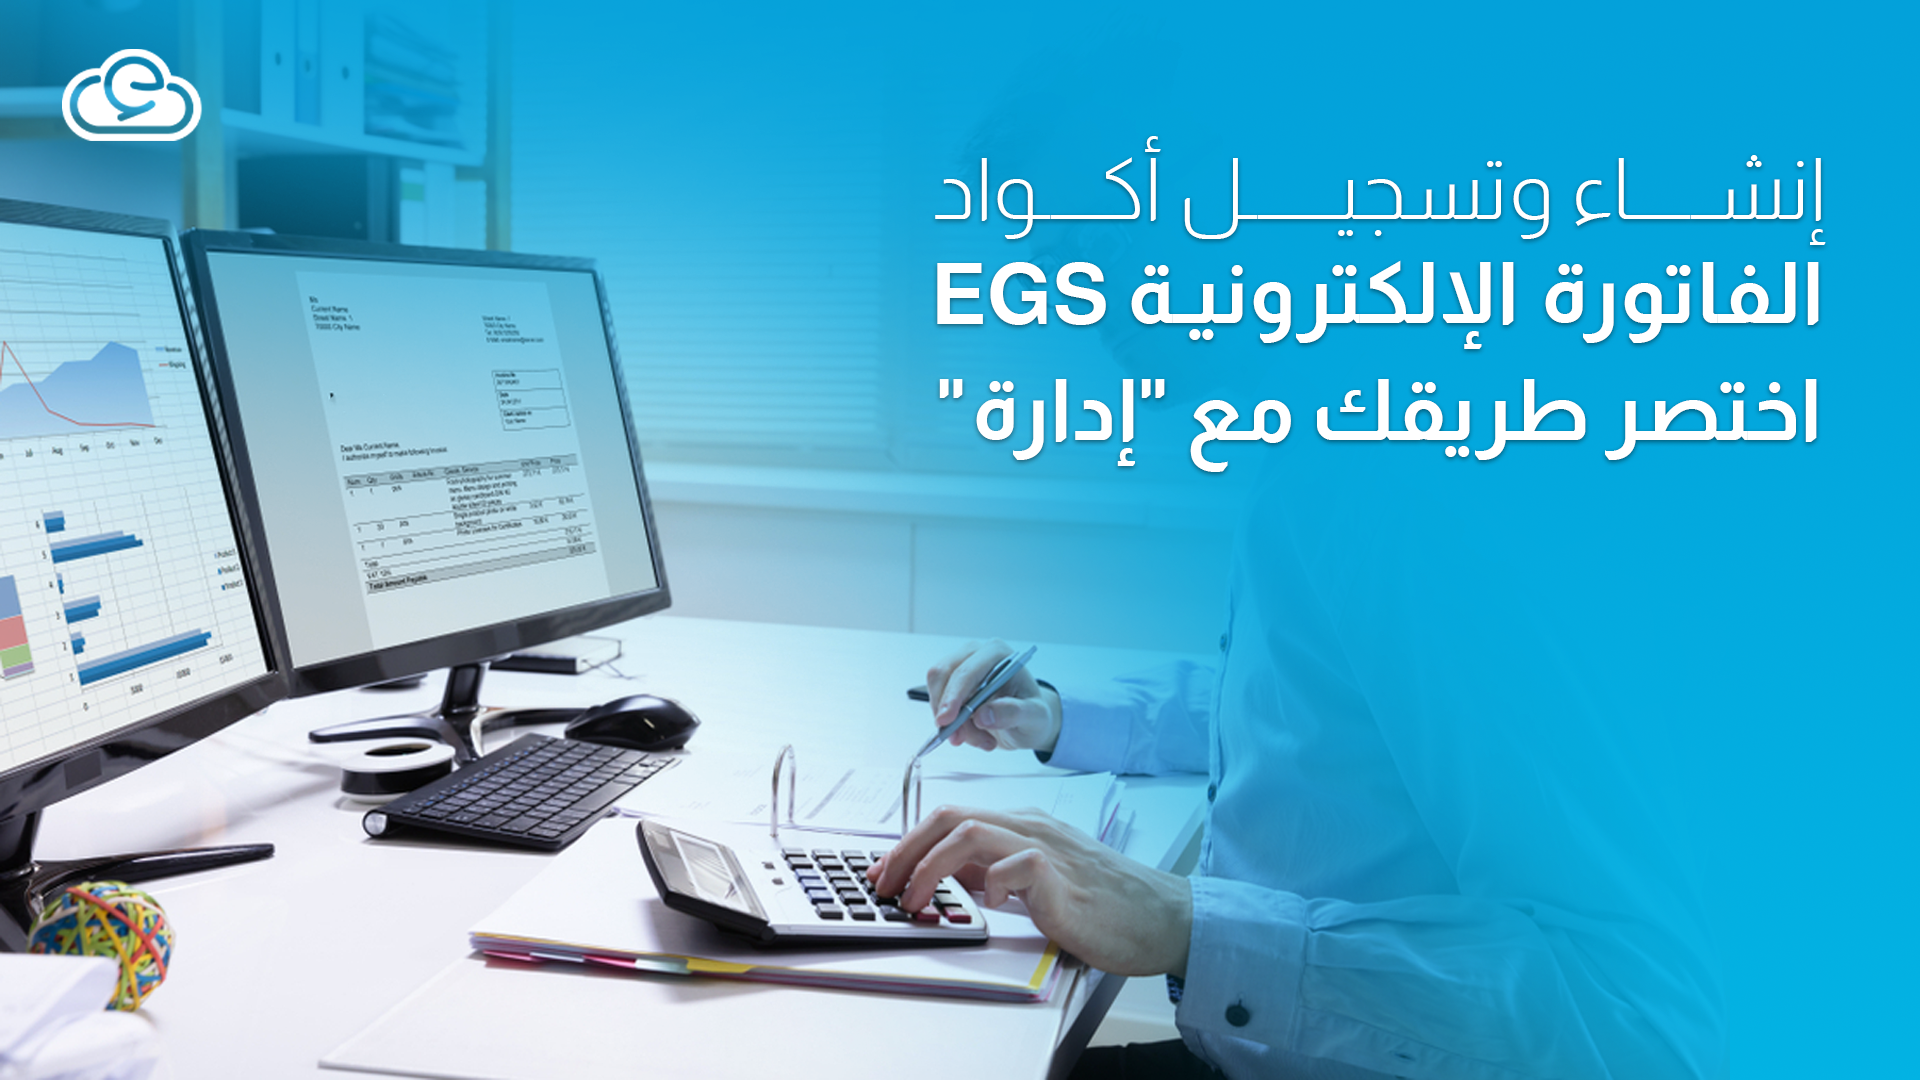 إنشاء وتسجيل أكواد الفاتورة الإلكترونية EGS | اختصر طريقك مع "إدارة"